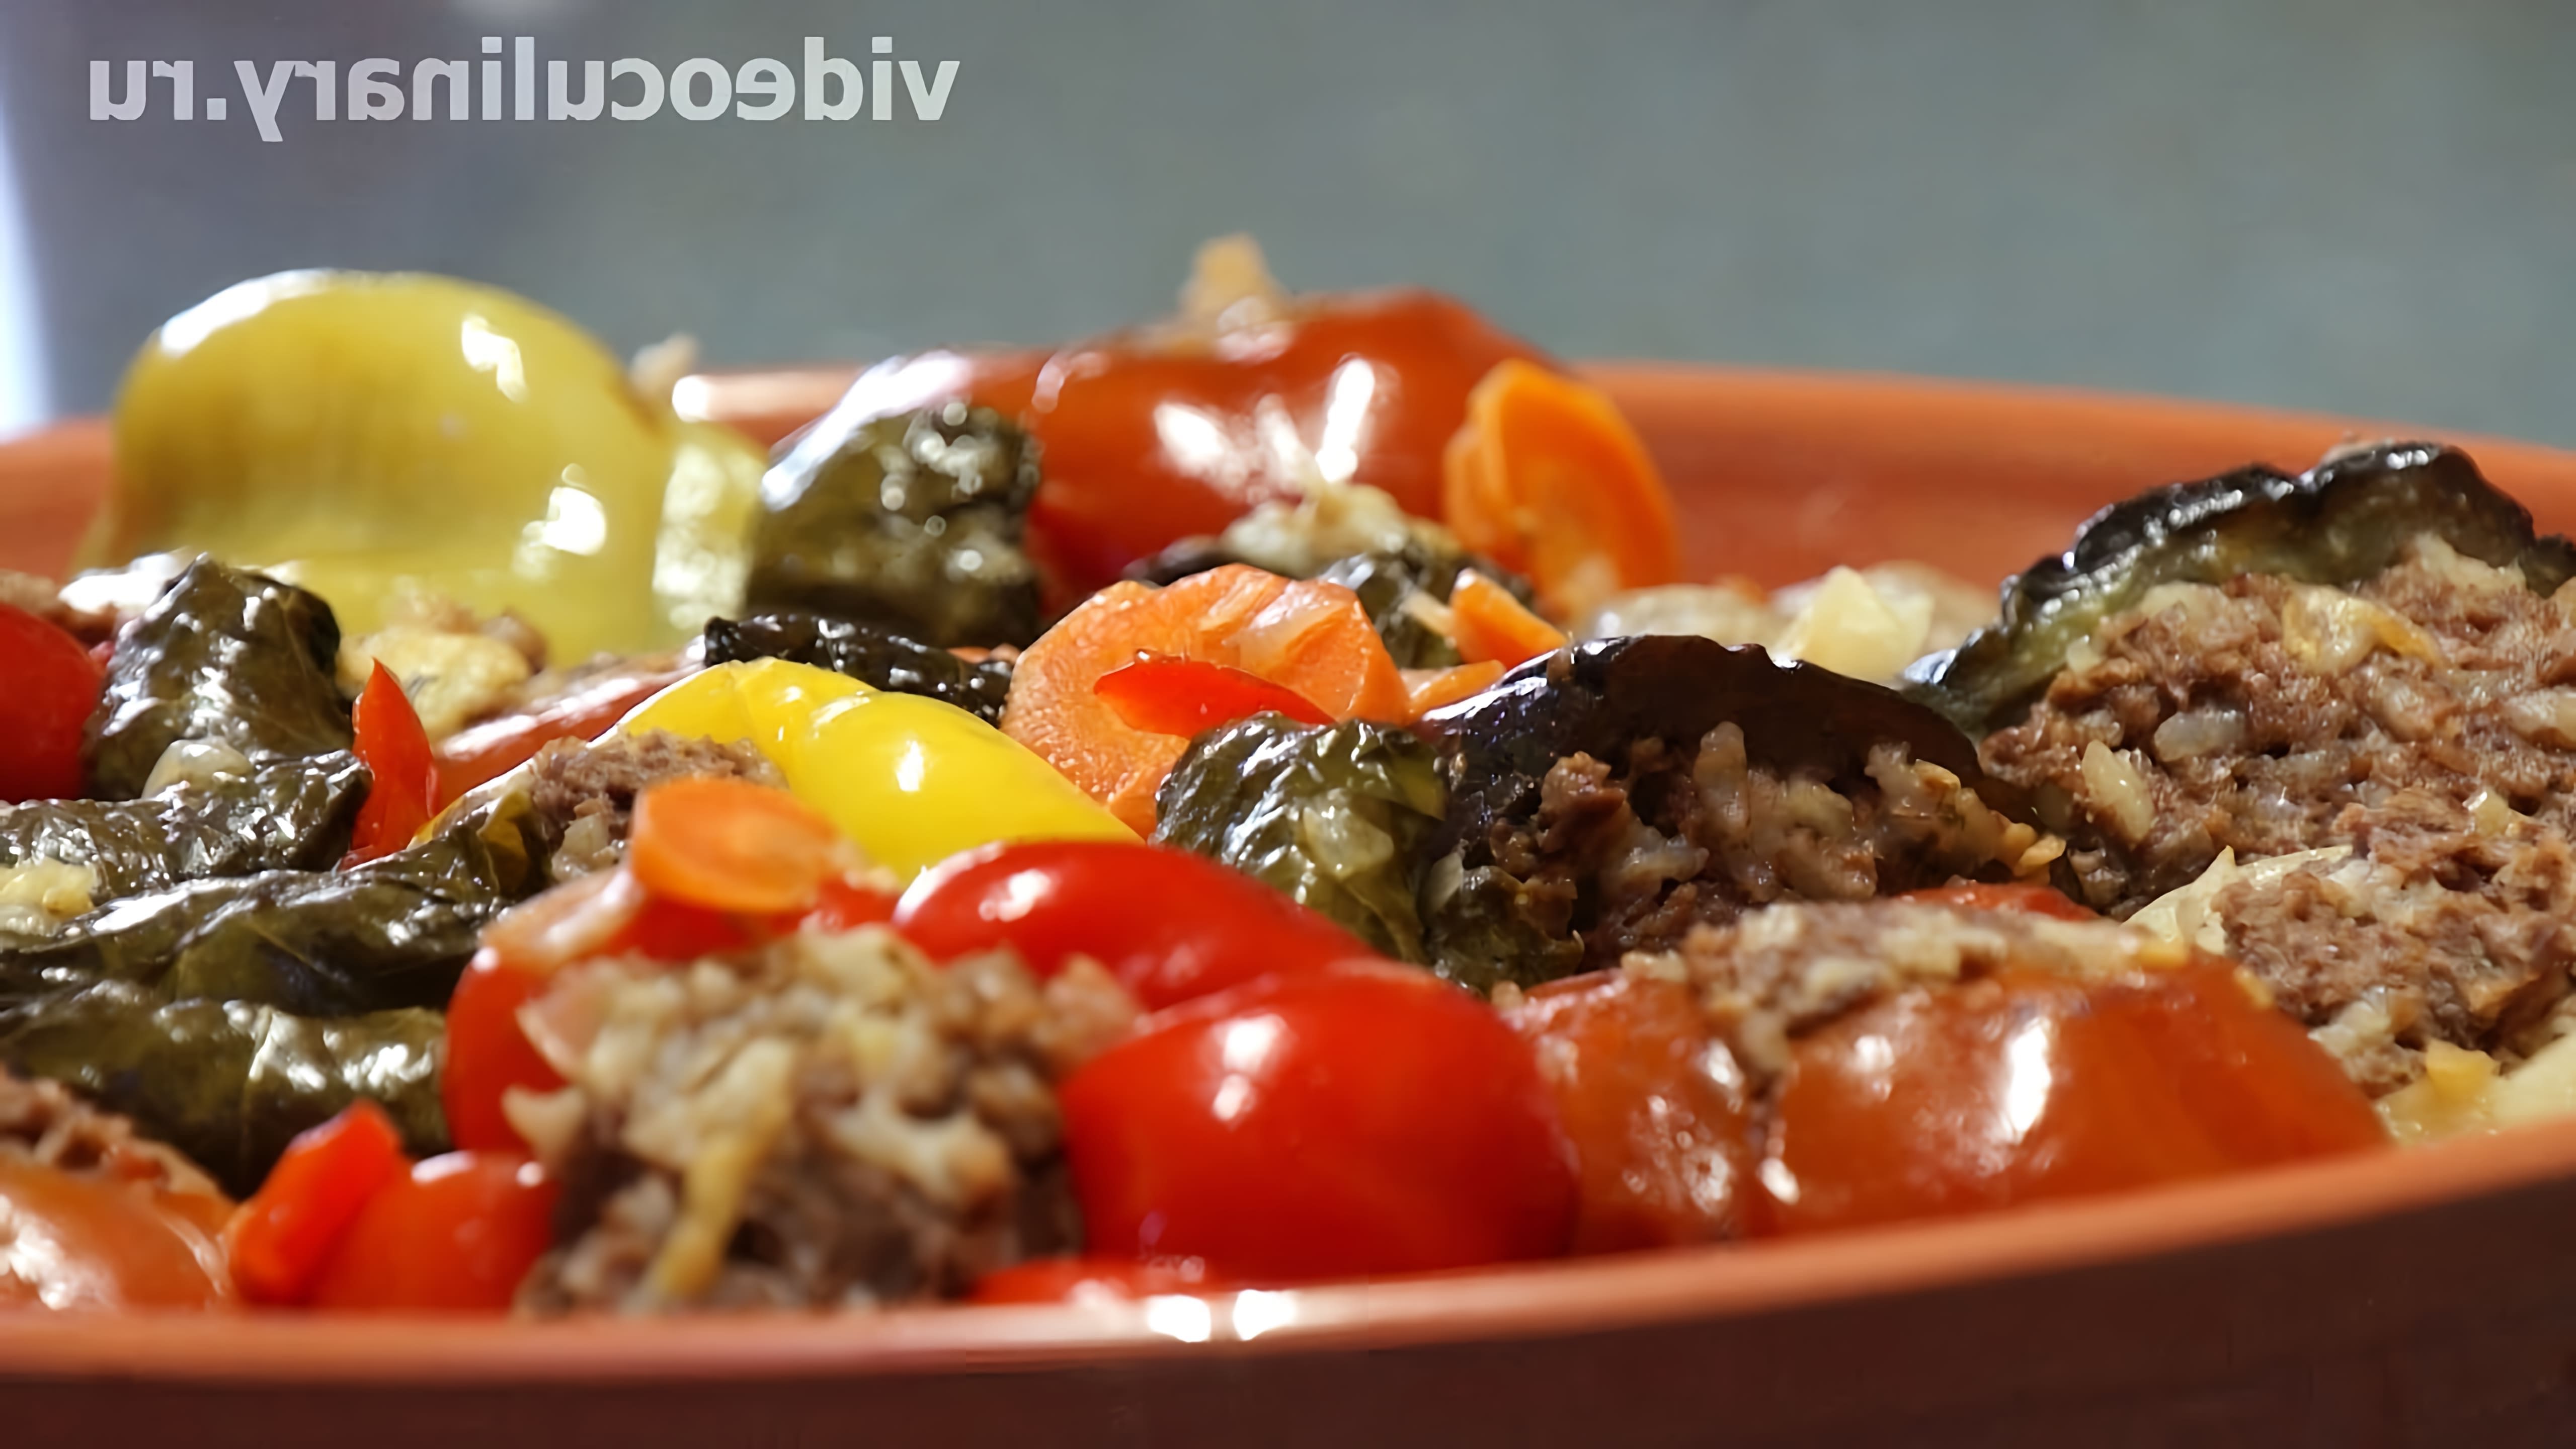 В этом видео-ролике "Фаршированные овощи - Рецепт Бабушки Эммы" демонстрируется процесс приготовления вкусного и полезного блюда из овощей